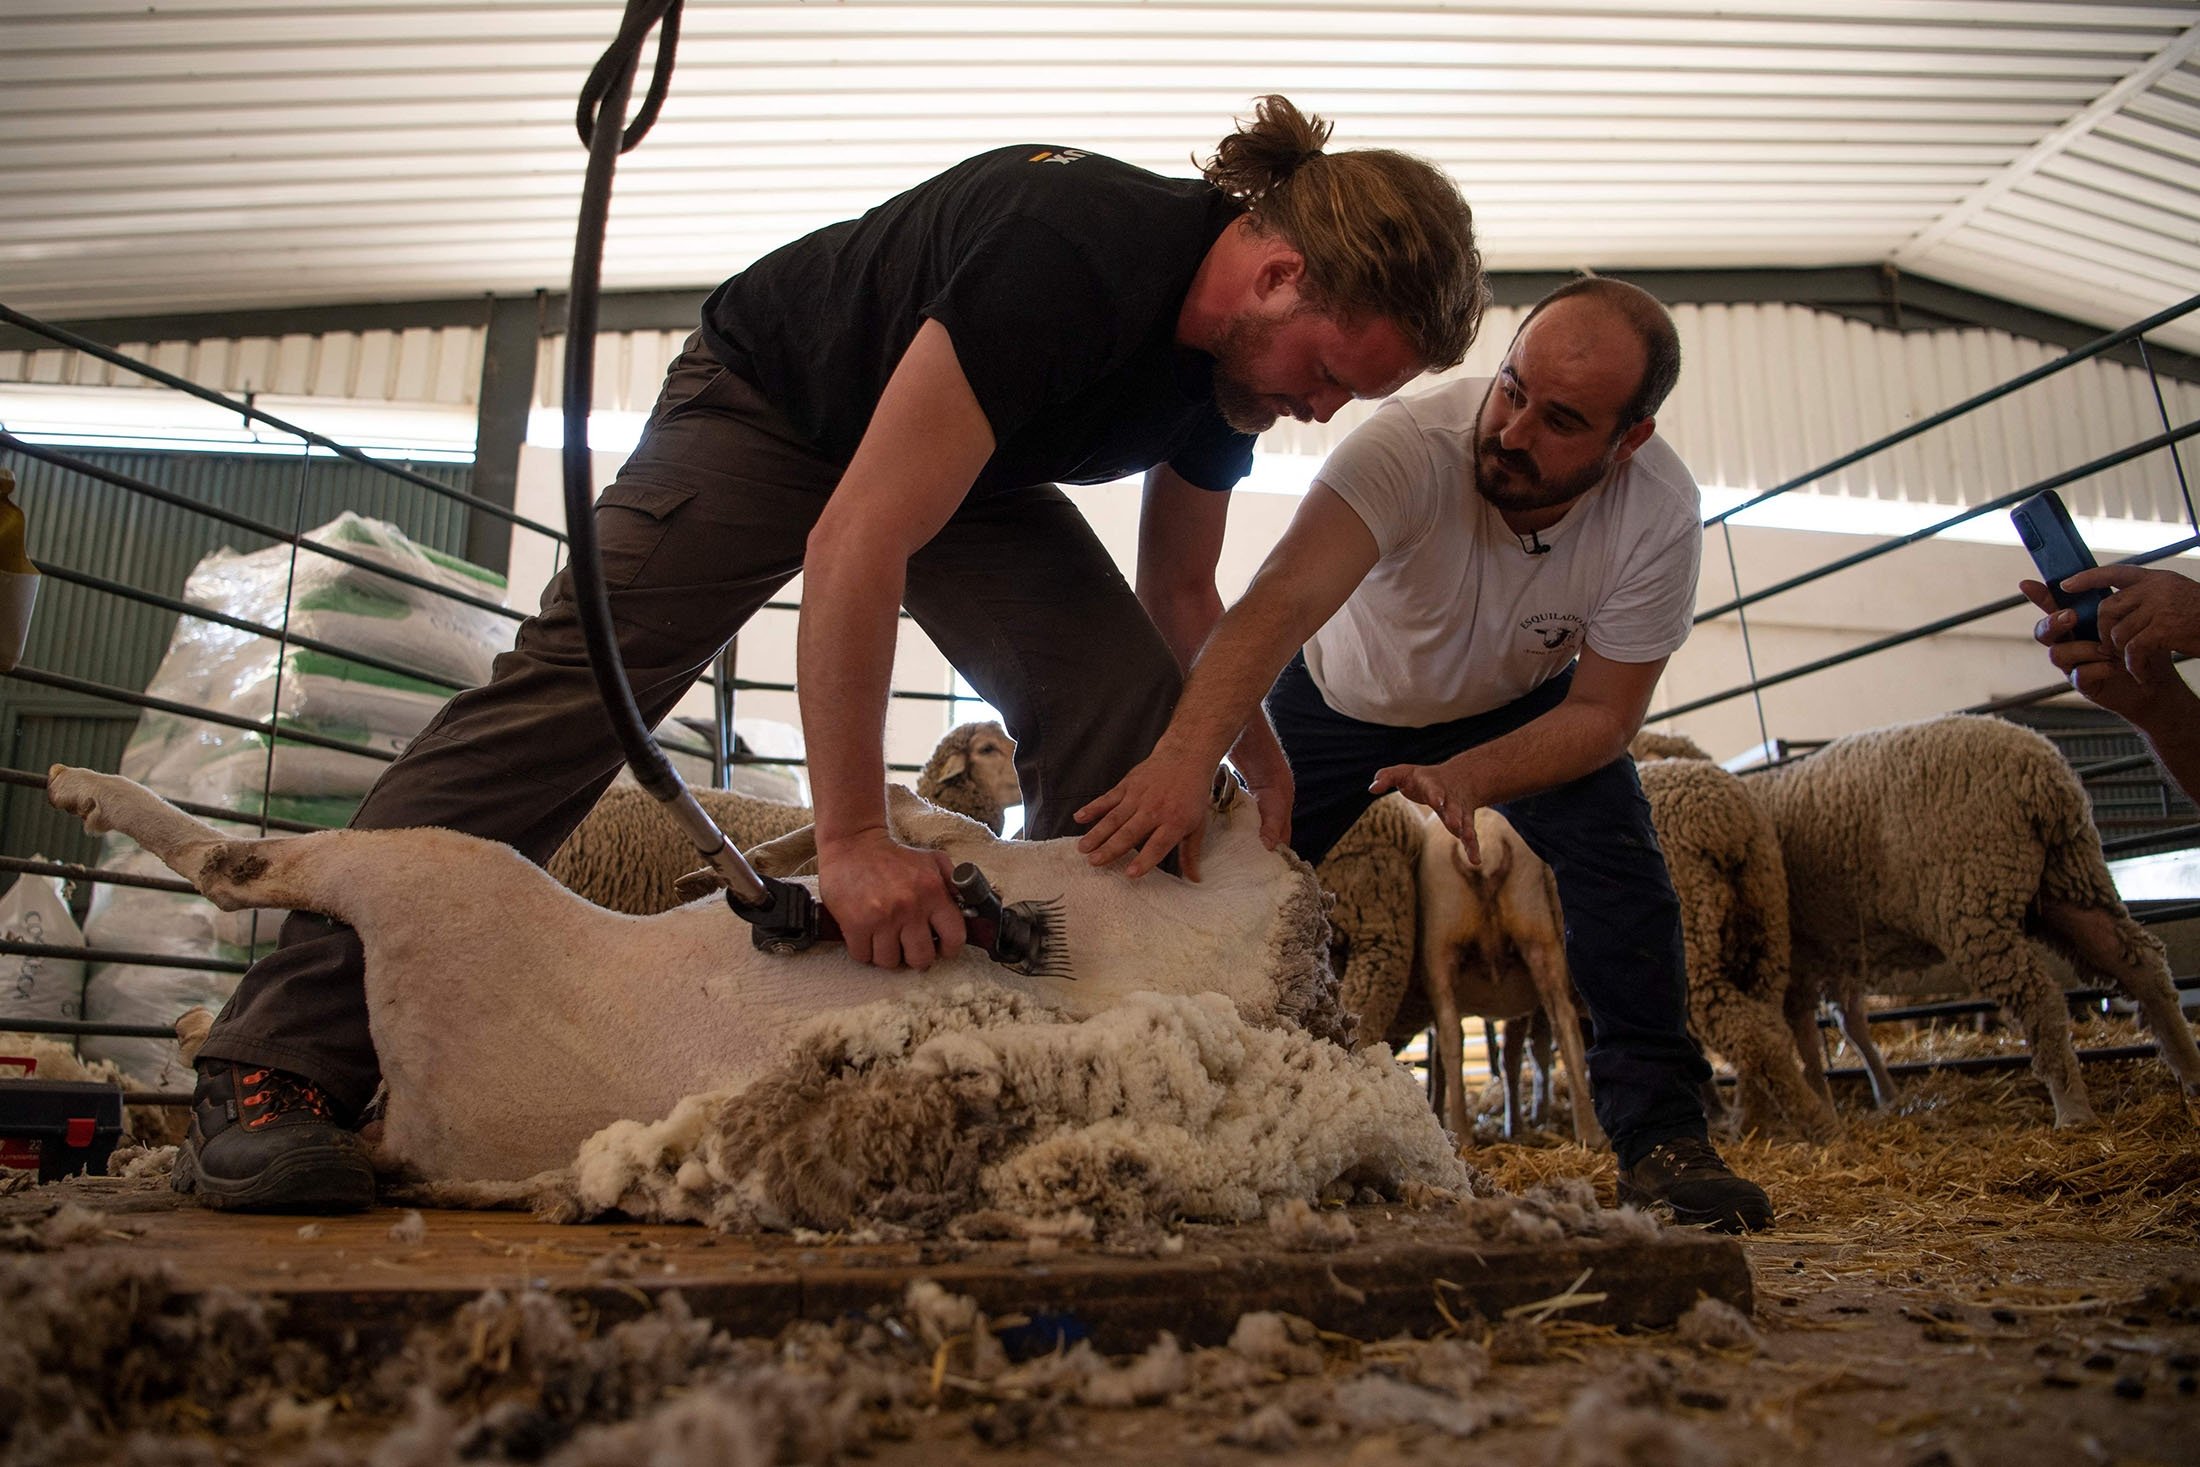 Pencukur bulu profesional Jose Rivero (kanan) memberikan instruksi kepada siswa Prancis Thibault Gohier saat ia belajar mencukur bulu domba di sekolah penggembalaan peternakan Cooprado di Casar de Caceres, Spanyol, 13 Mei 2022. (AFP Photo)